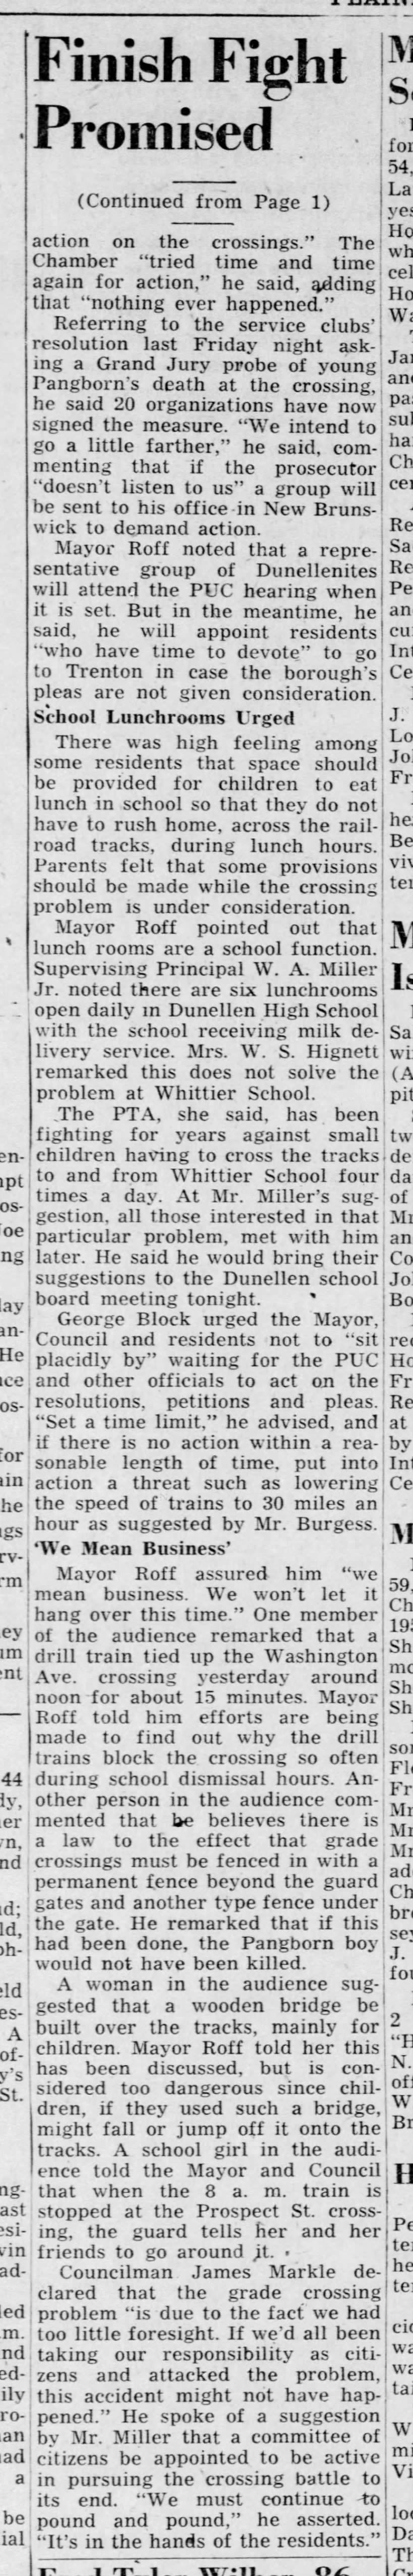 Dunellen crossings, April 10, 1951 part 2